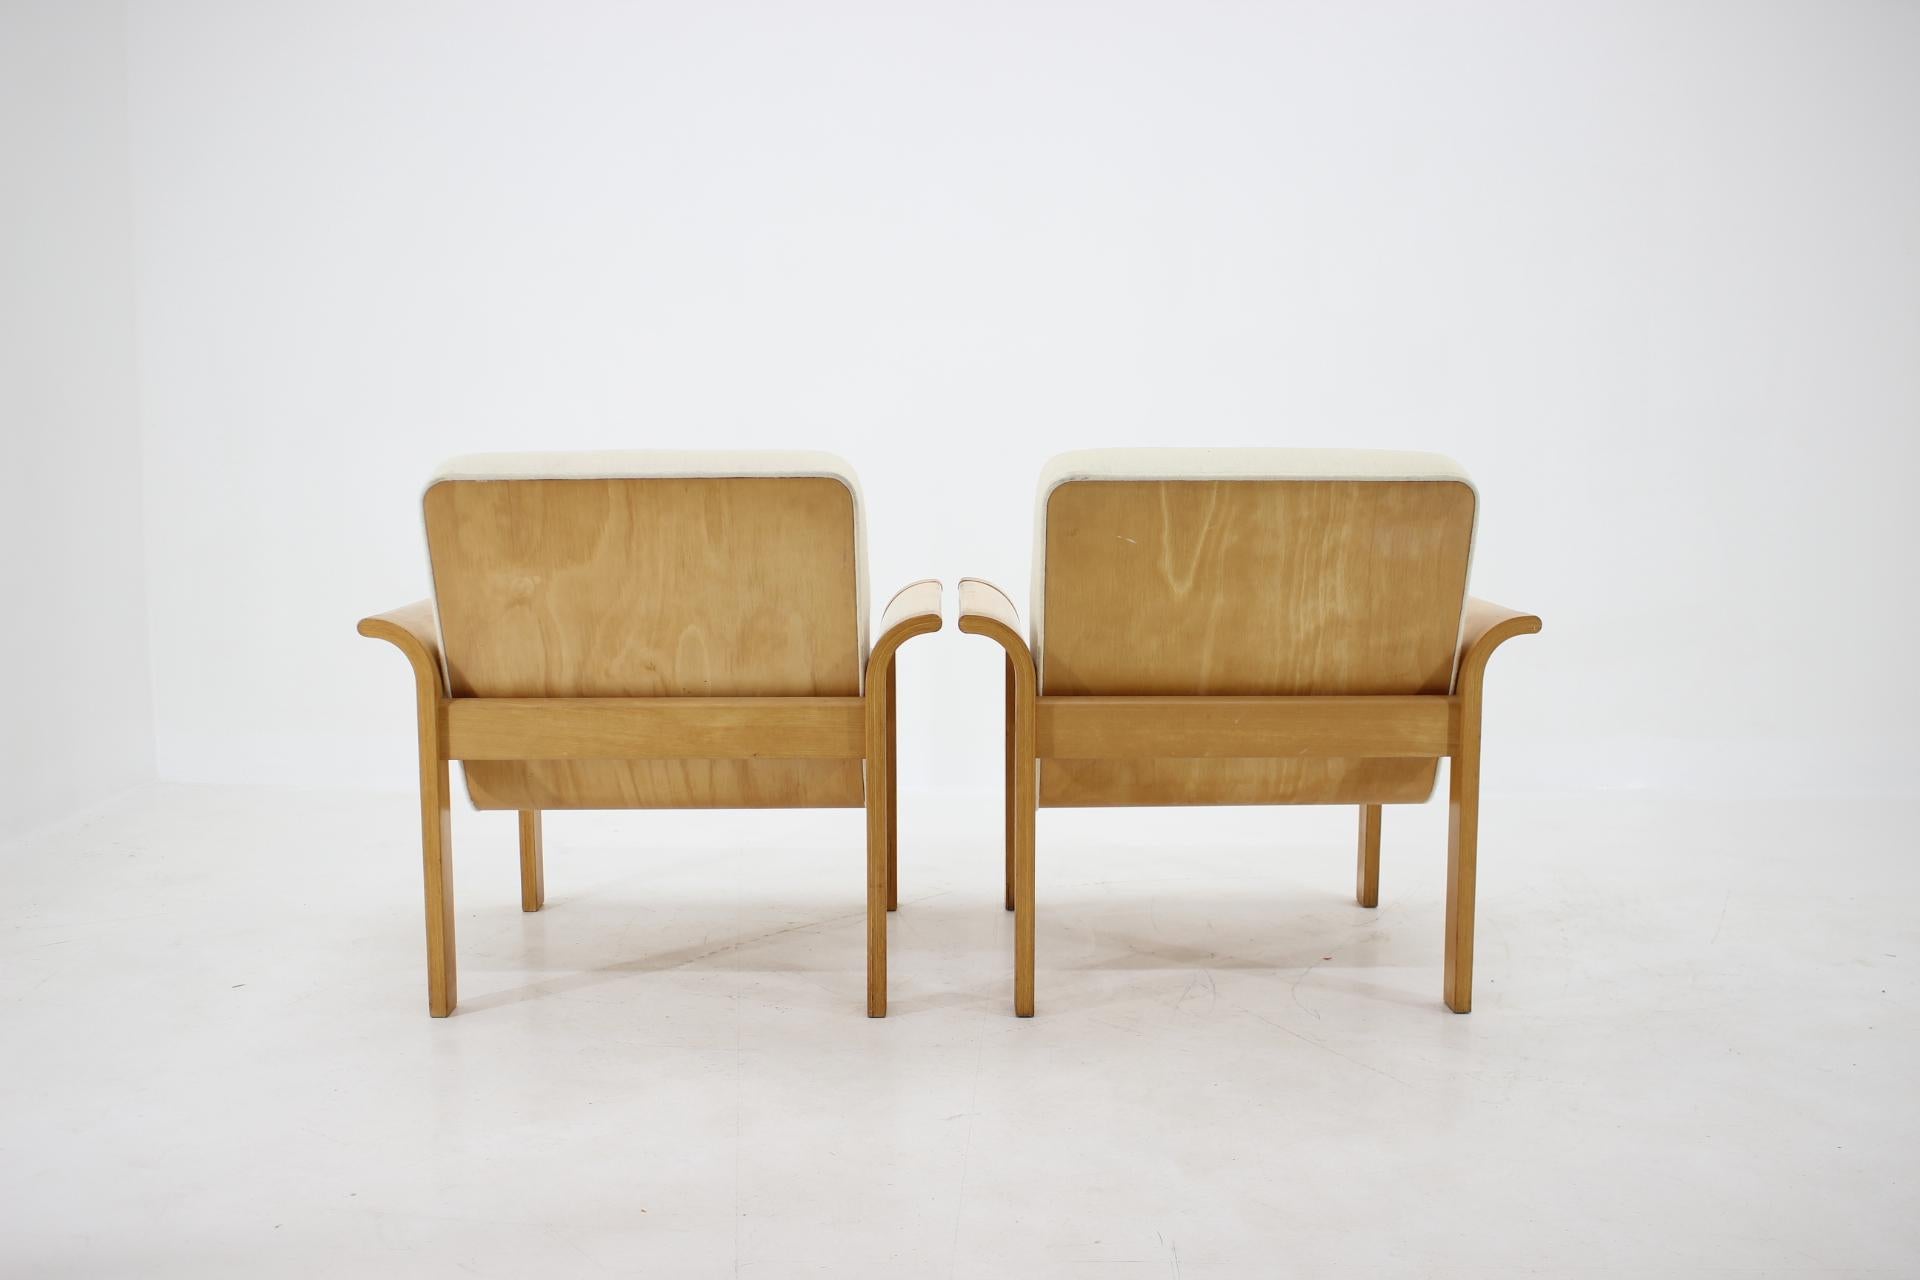 Late 20th Century 1970s Danish Oak Lounge Chair by Thygesen & Sørensen for Magnus Olesen